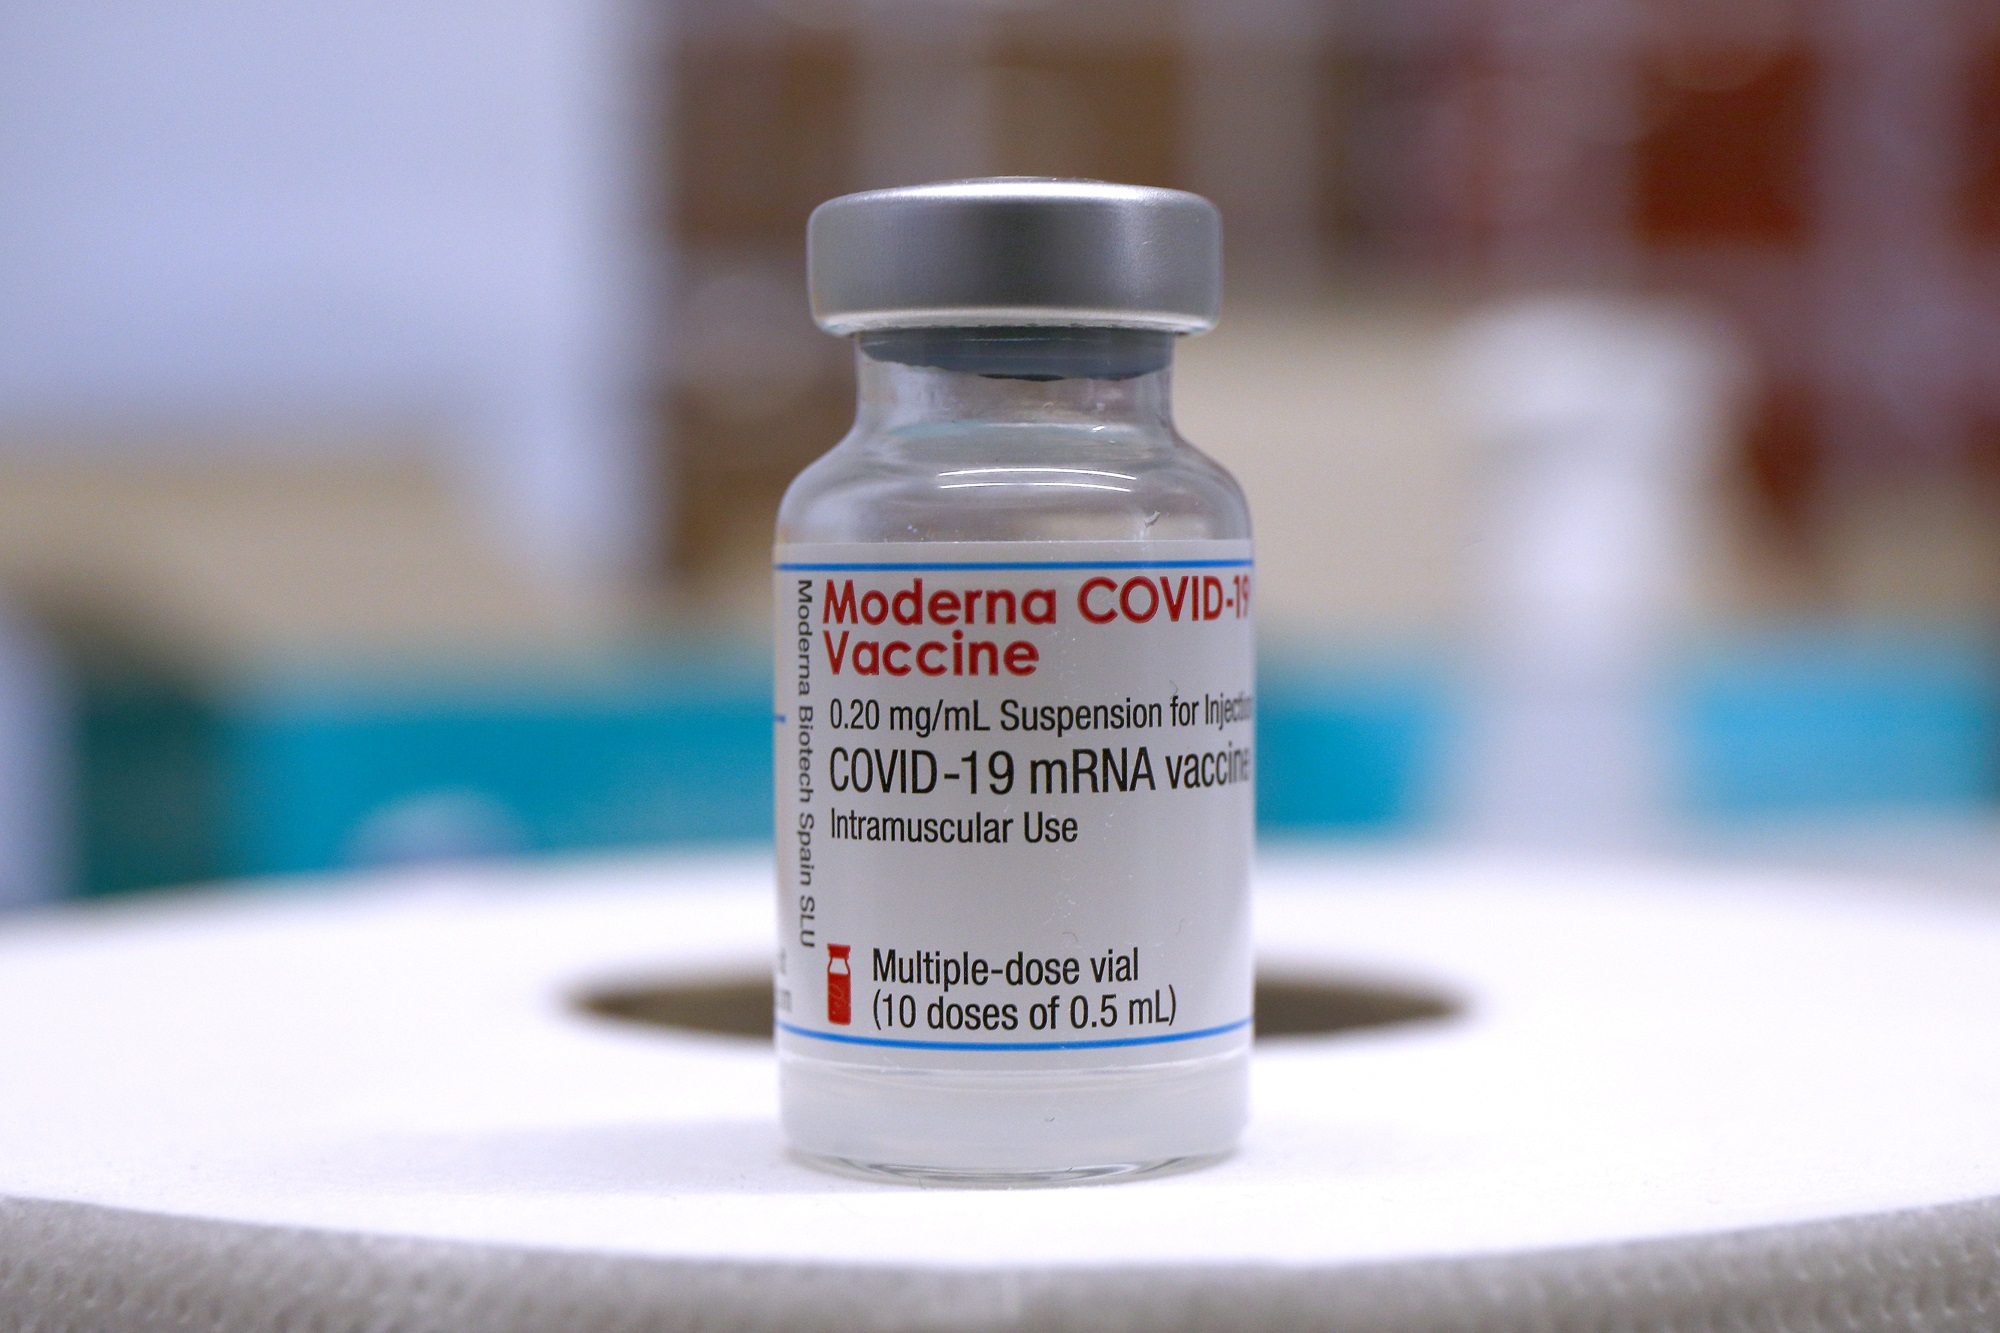 ΕΜΑ: Έκτακτη συνεδρίαση για αξιολόγηση του εμβολίου της Moderna για χρήση σε παιδιά 12-18 ετών